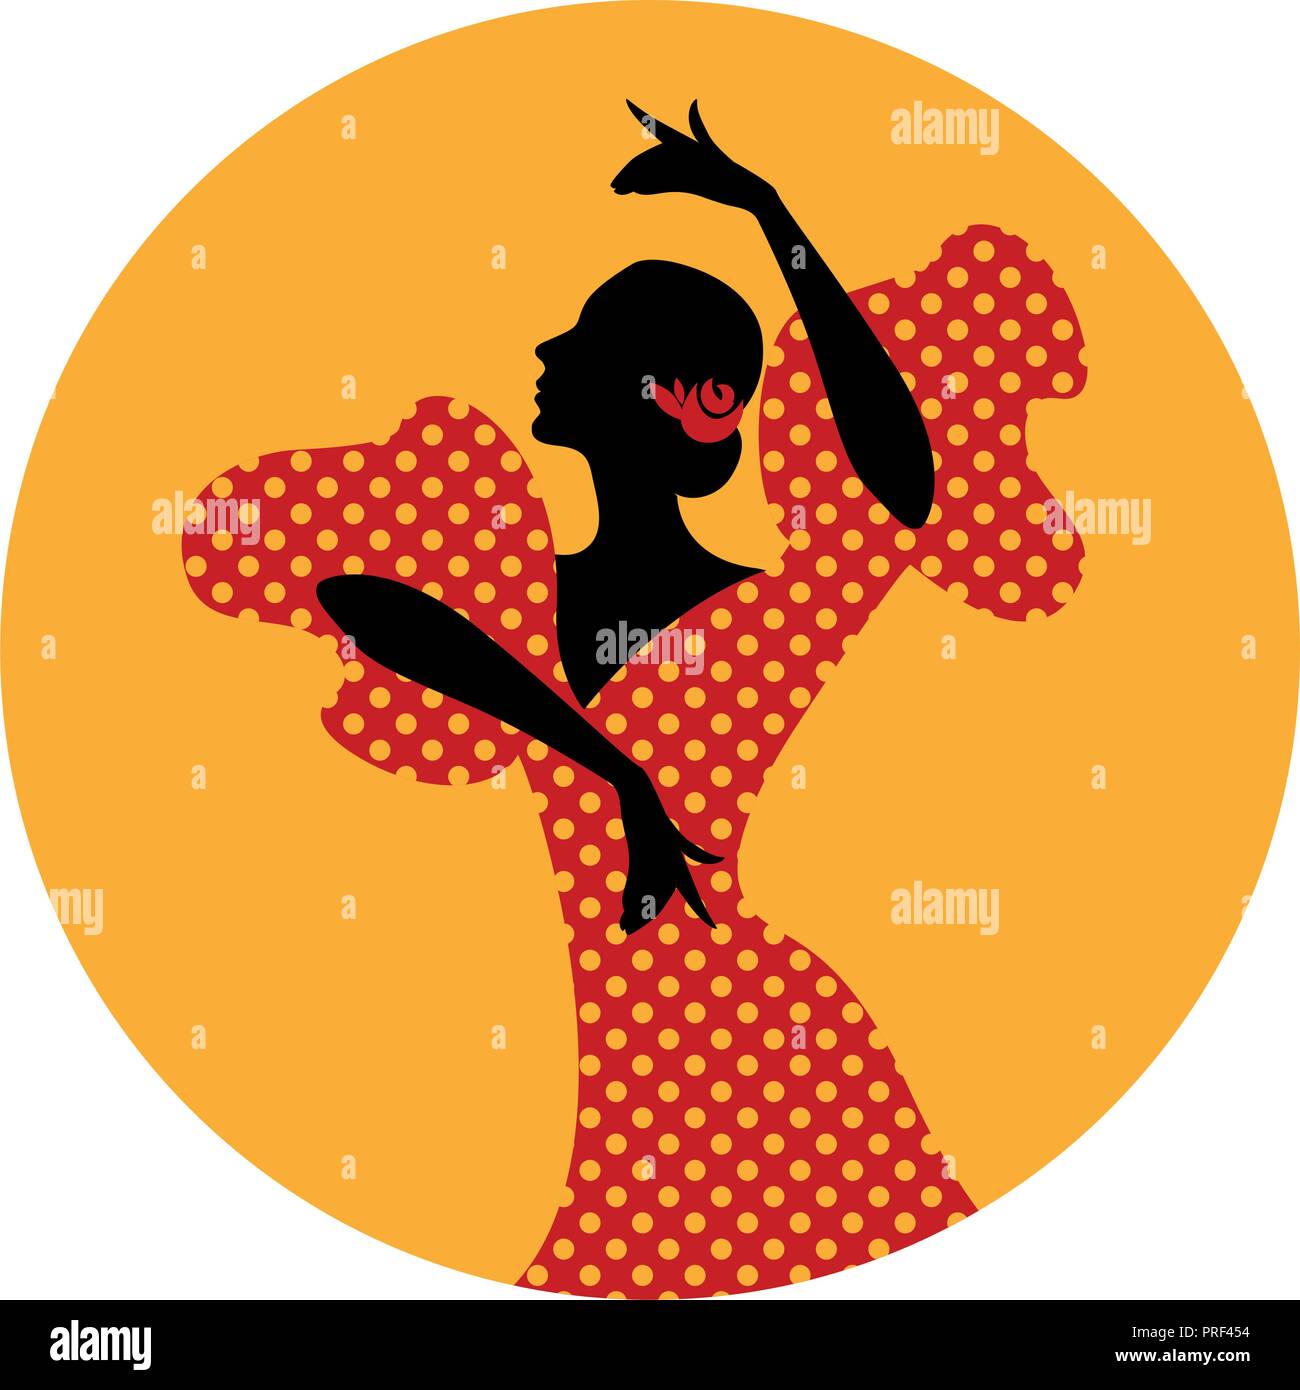 Ballerino spagnolo di flamenco. Illustrazione Vettoriale Illustrazione Vettoriale